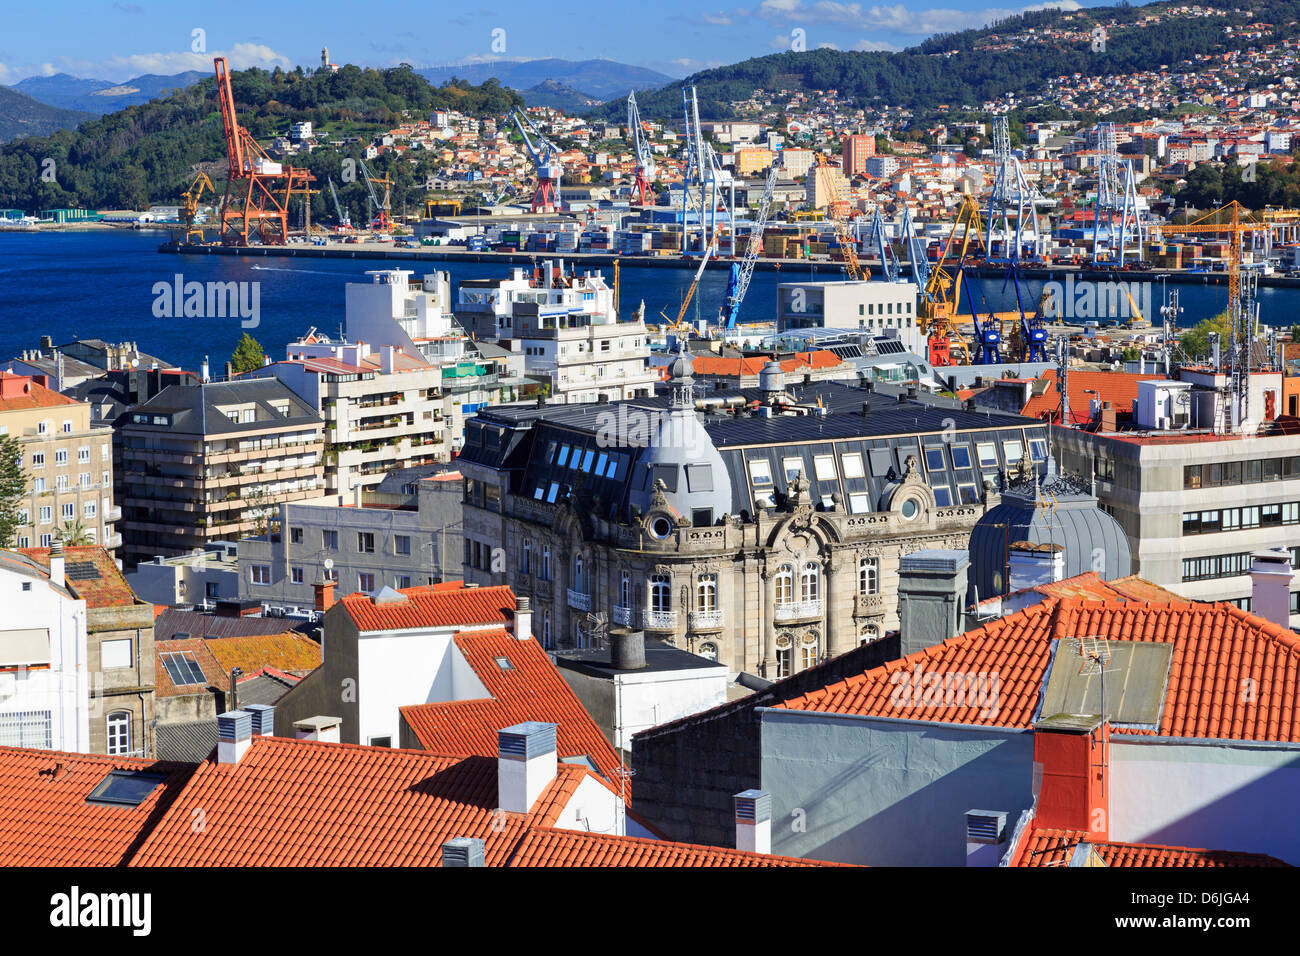 Tetti di tegole rosse nel centro storico di Vigo, Galizia, Spagna, Europa Foto Stock